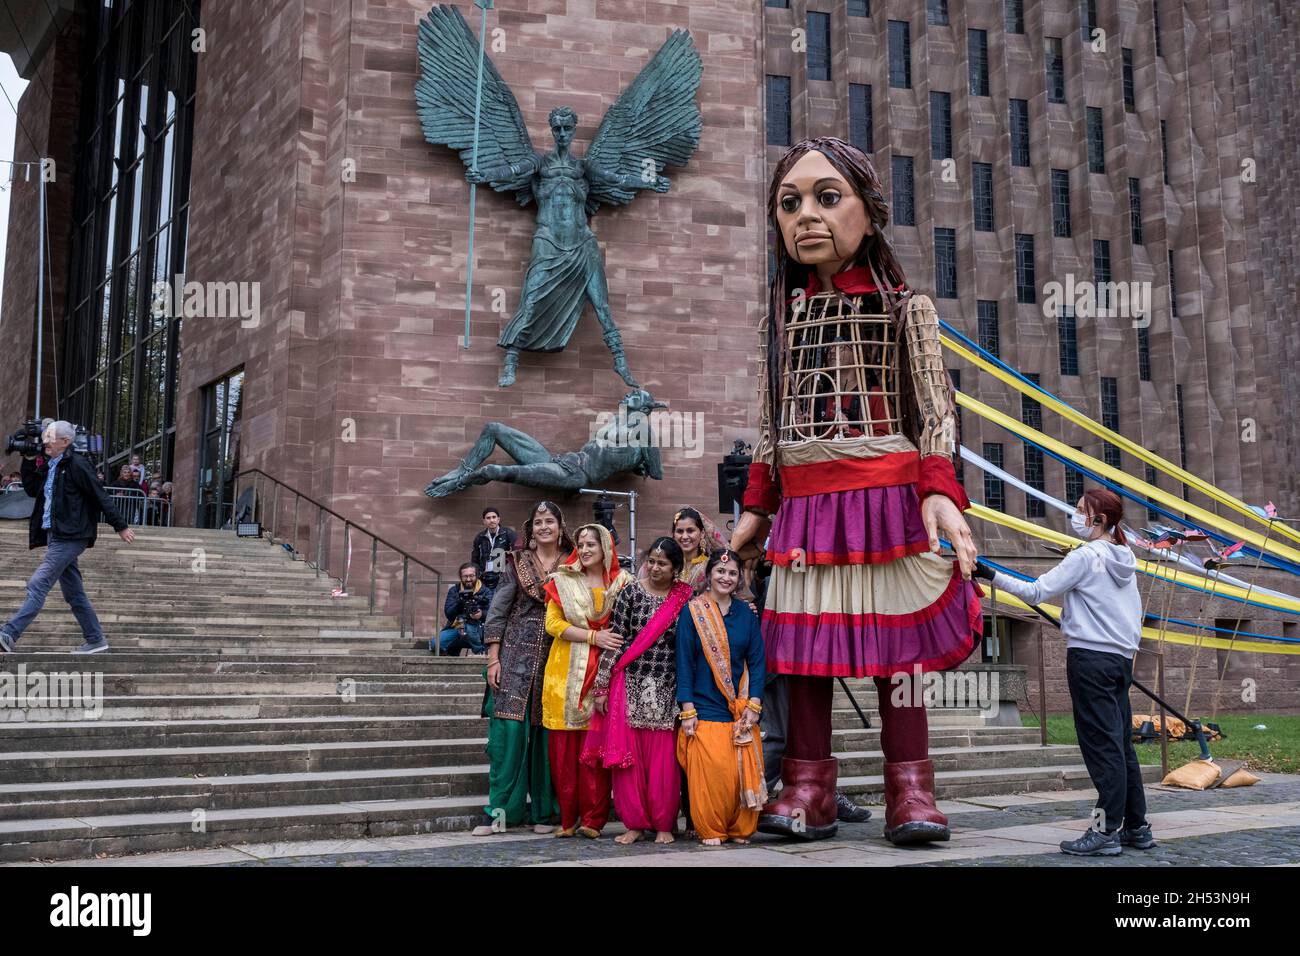 Little Amal enchante les foules de spectateurs lorsqu'elle se promène dans le centre-ville, que l'on voit ici danser avec des danseurs asiatiques dans des saris lumineux devant la cathédrale de Coventry le 27 octobre 2020 à Coventry, au Royaume-Uni.Little Amal est une marionnette de 3.5 mètres de haut et une œuvre d'art vivante d'un jeune enfant réfugié syrien qui a passé les 3 derniers mois à marcher 8000 km de la frontière syrienne à travers la Turquie, la Grèce, l'Italie, la France, la Suisse,L'Allemagne, la Belgique et le Royaume-Uni doivent attirer l'attention sur les besoins urgents des jeunes réfugiés.Coventry, qui a le plus grand programme de réinstallation en Syrie de la région, et aussi un la Banque D'Images